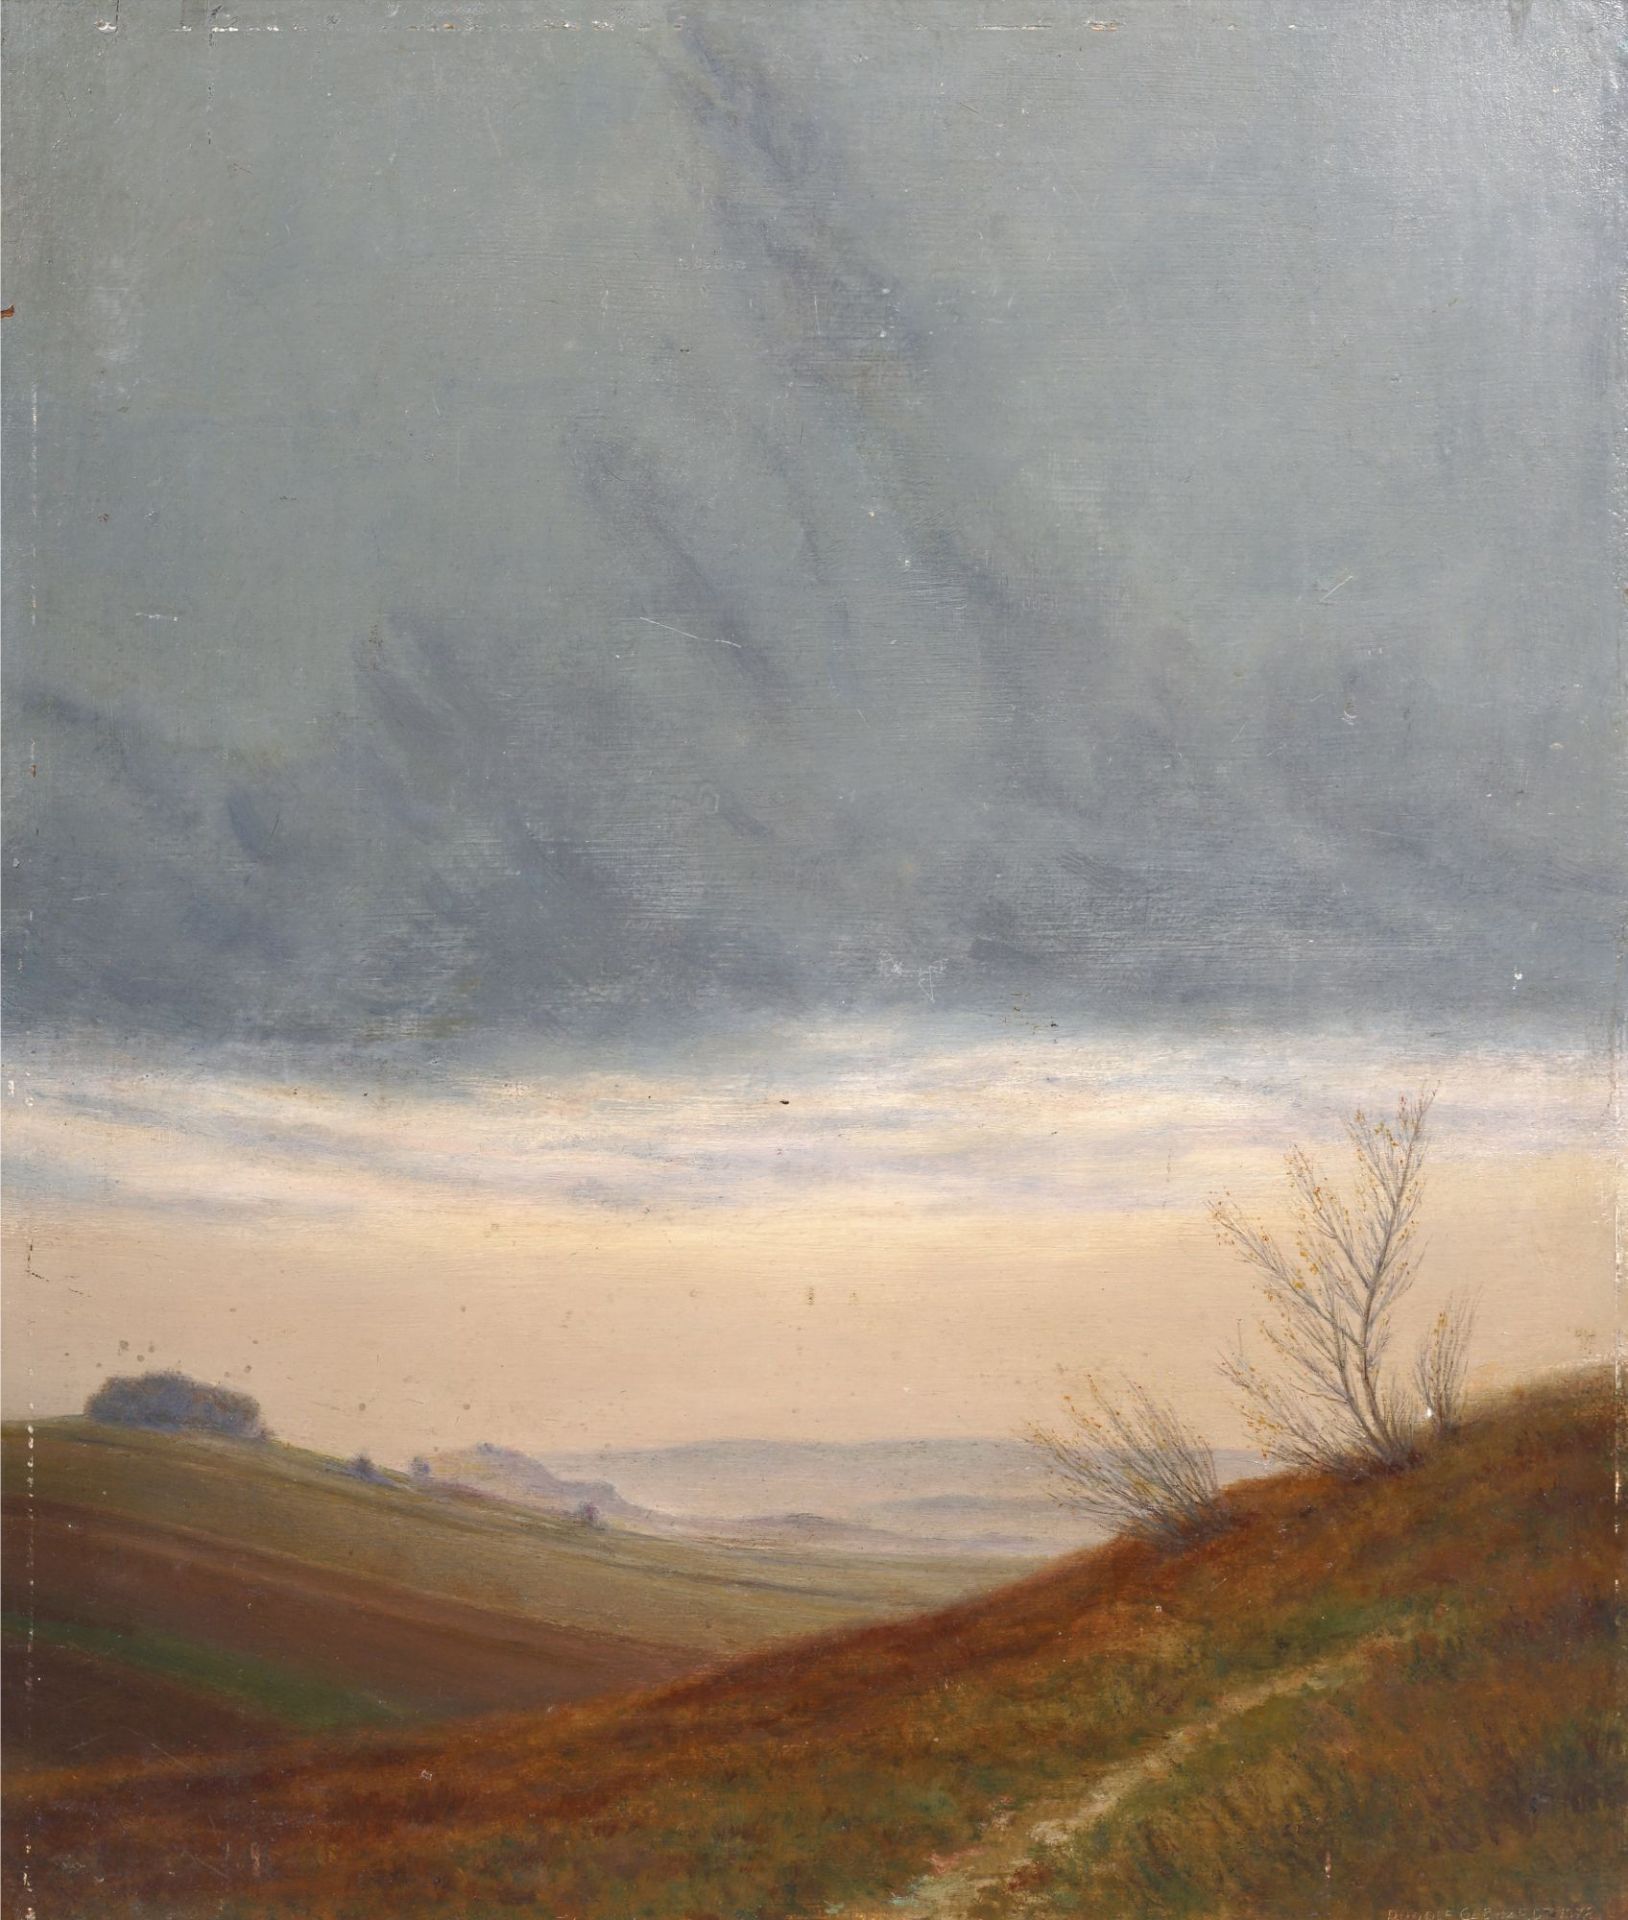 Rudolf Gebhardt "Hellerau" (Landschaft bei Dresden im Morgennebel). 1918.